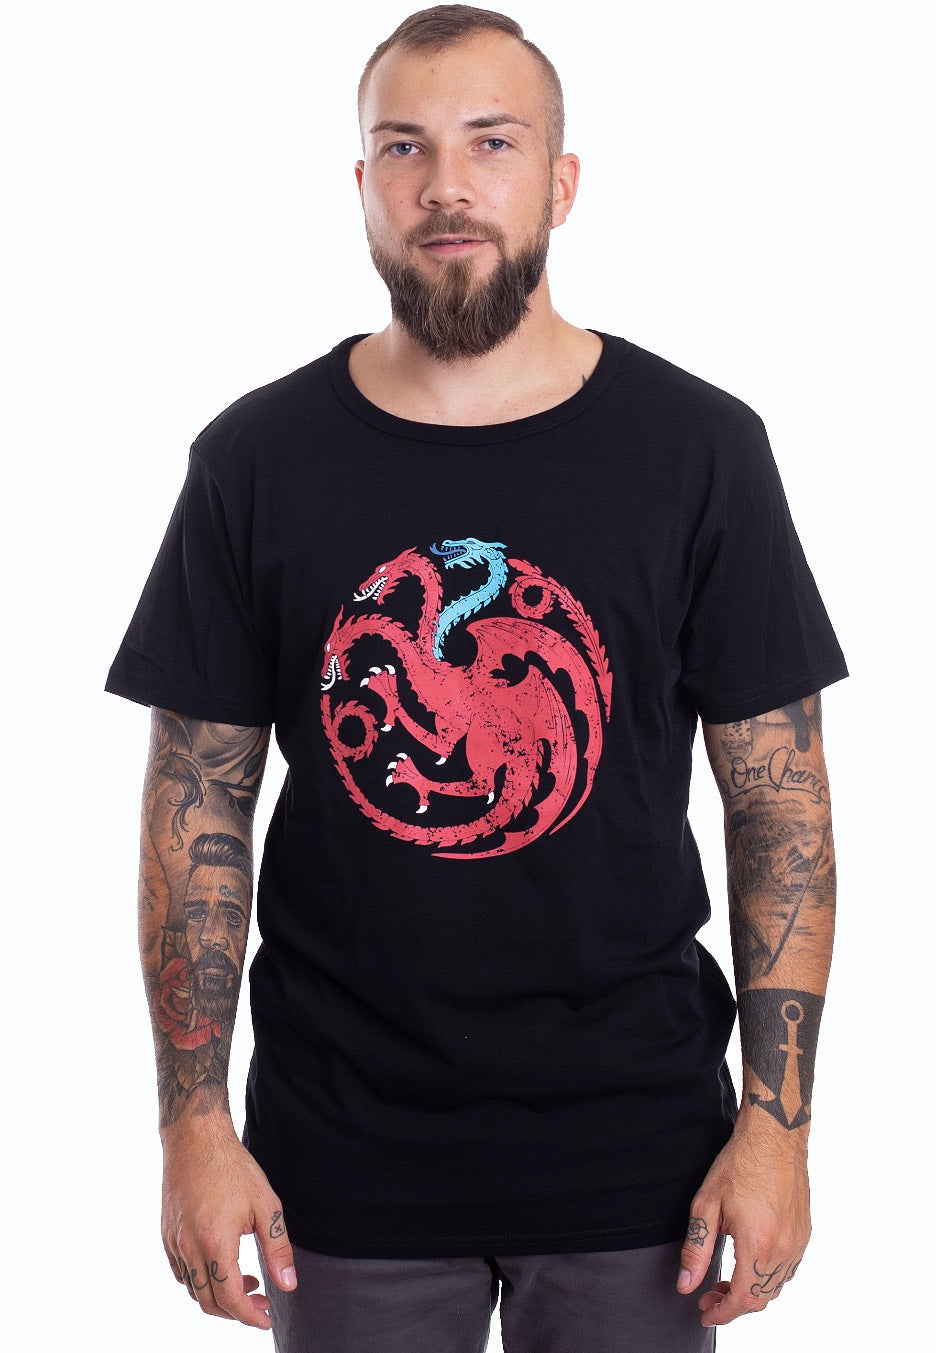 Game Of Thrones - Targaryen Viserion - T-Shirt